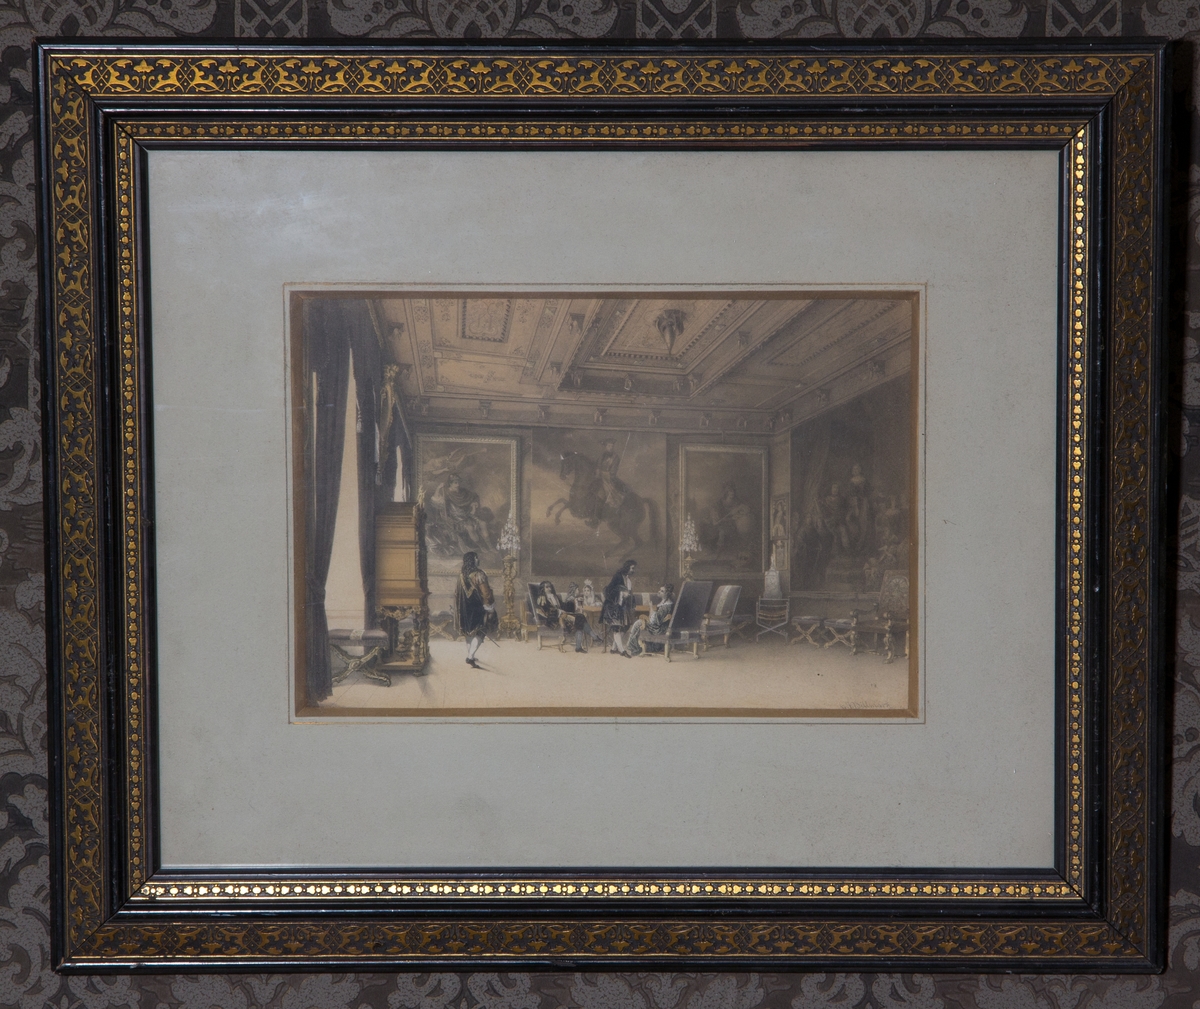 Trycket visar en interör, konselj-rummet på Gripsholms slott. I bilden finns personer avbildade iförda 1600-tals dräkter.